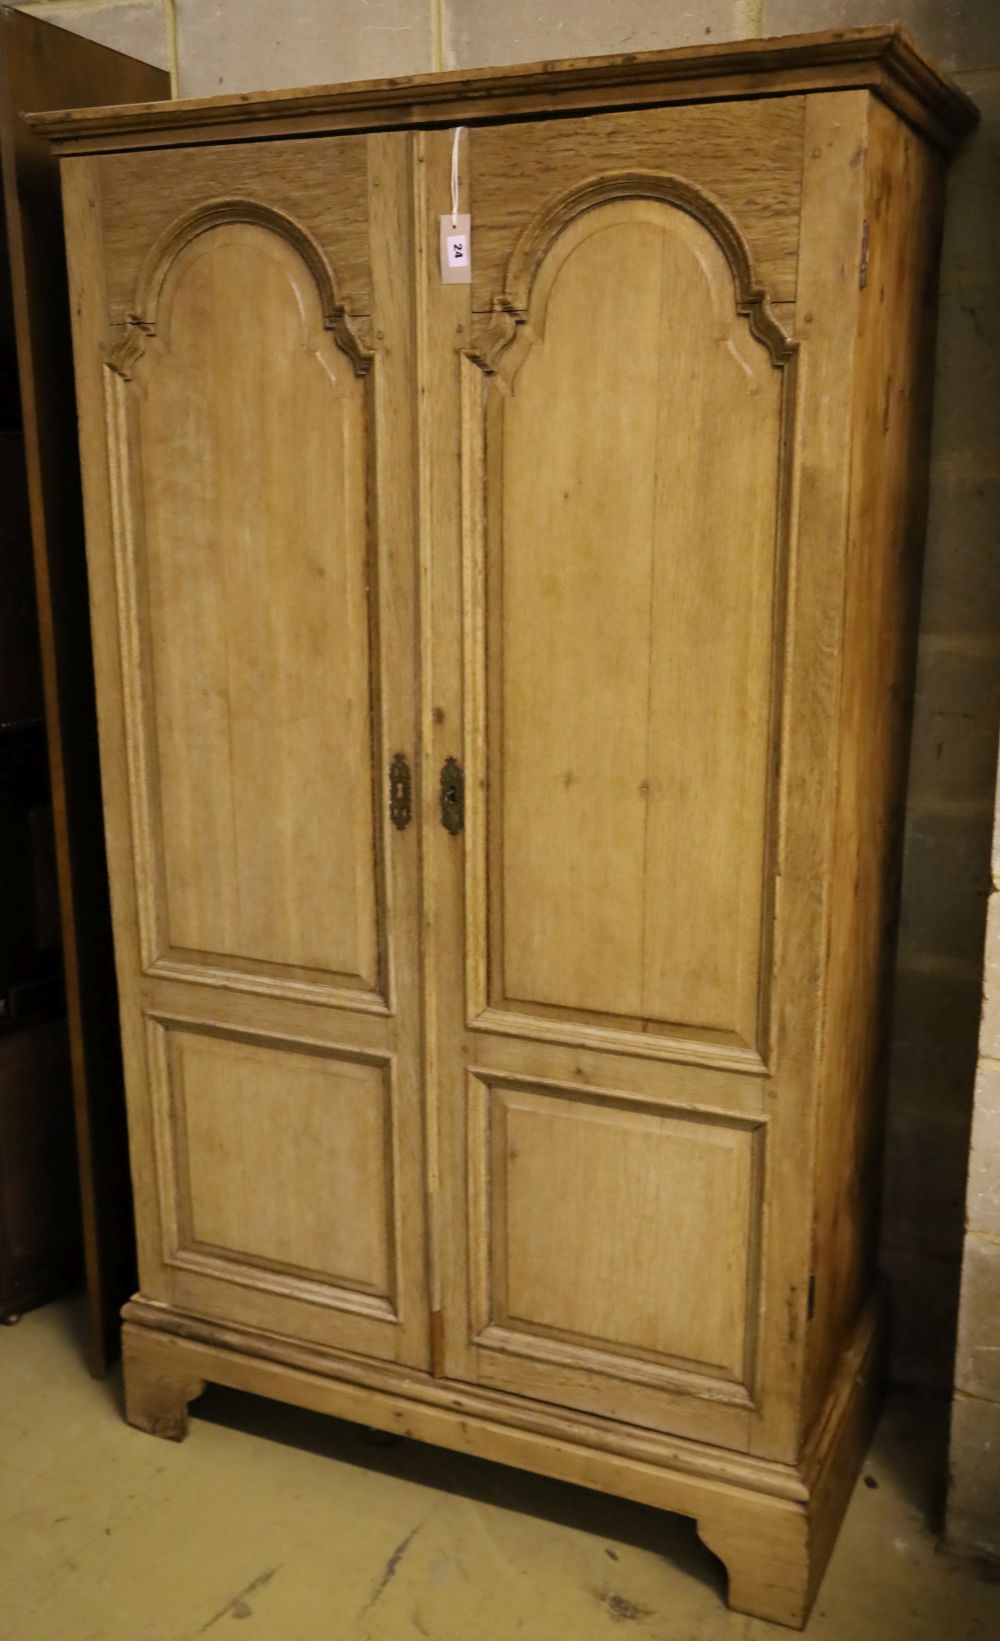 A Georgian style oak two door wardrobe, width 102cm depth 52cm height 179cm